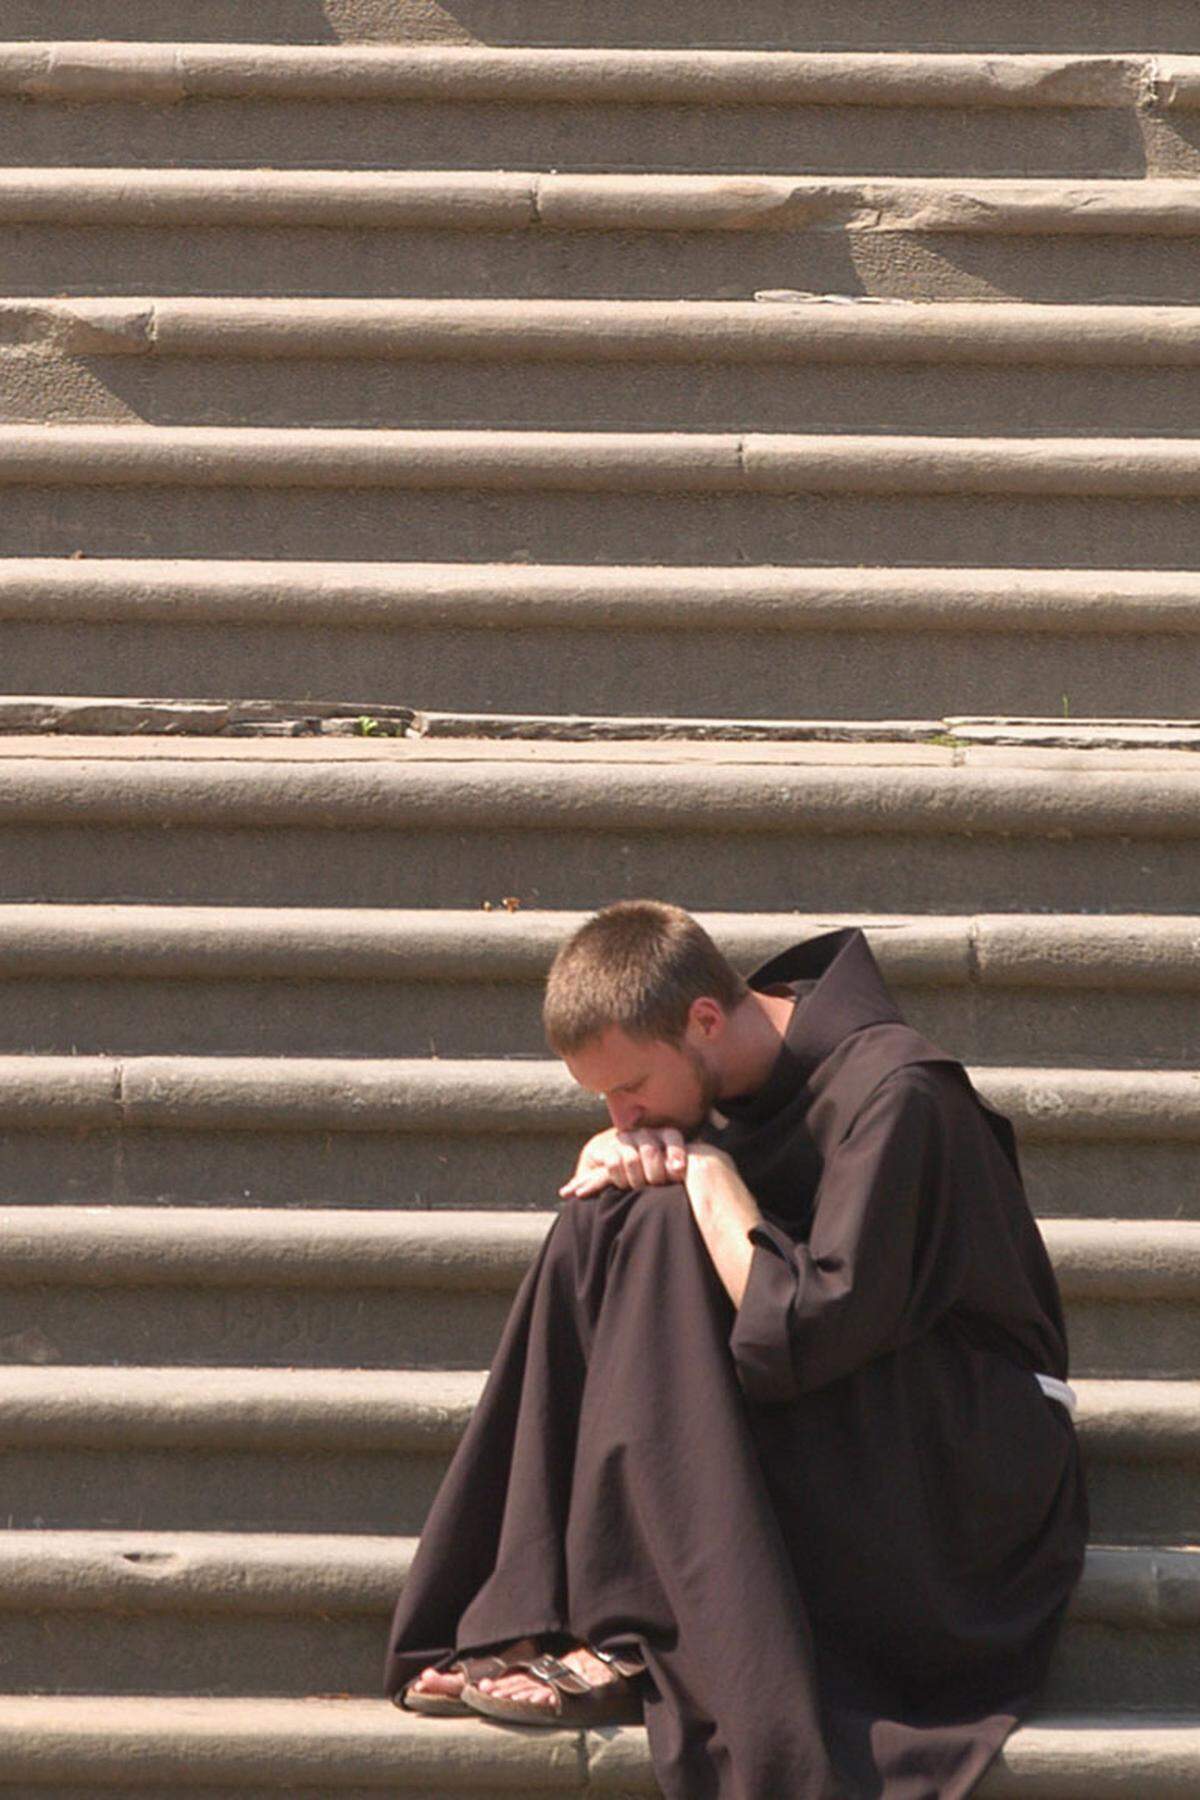 Ein anderer Mythos sieht die Schulstunde durch den Katholizismus begründet: Mönche hätten den Unterricht ihrer Schüler alle 50 Minuten unterbrochen, um zu beten.